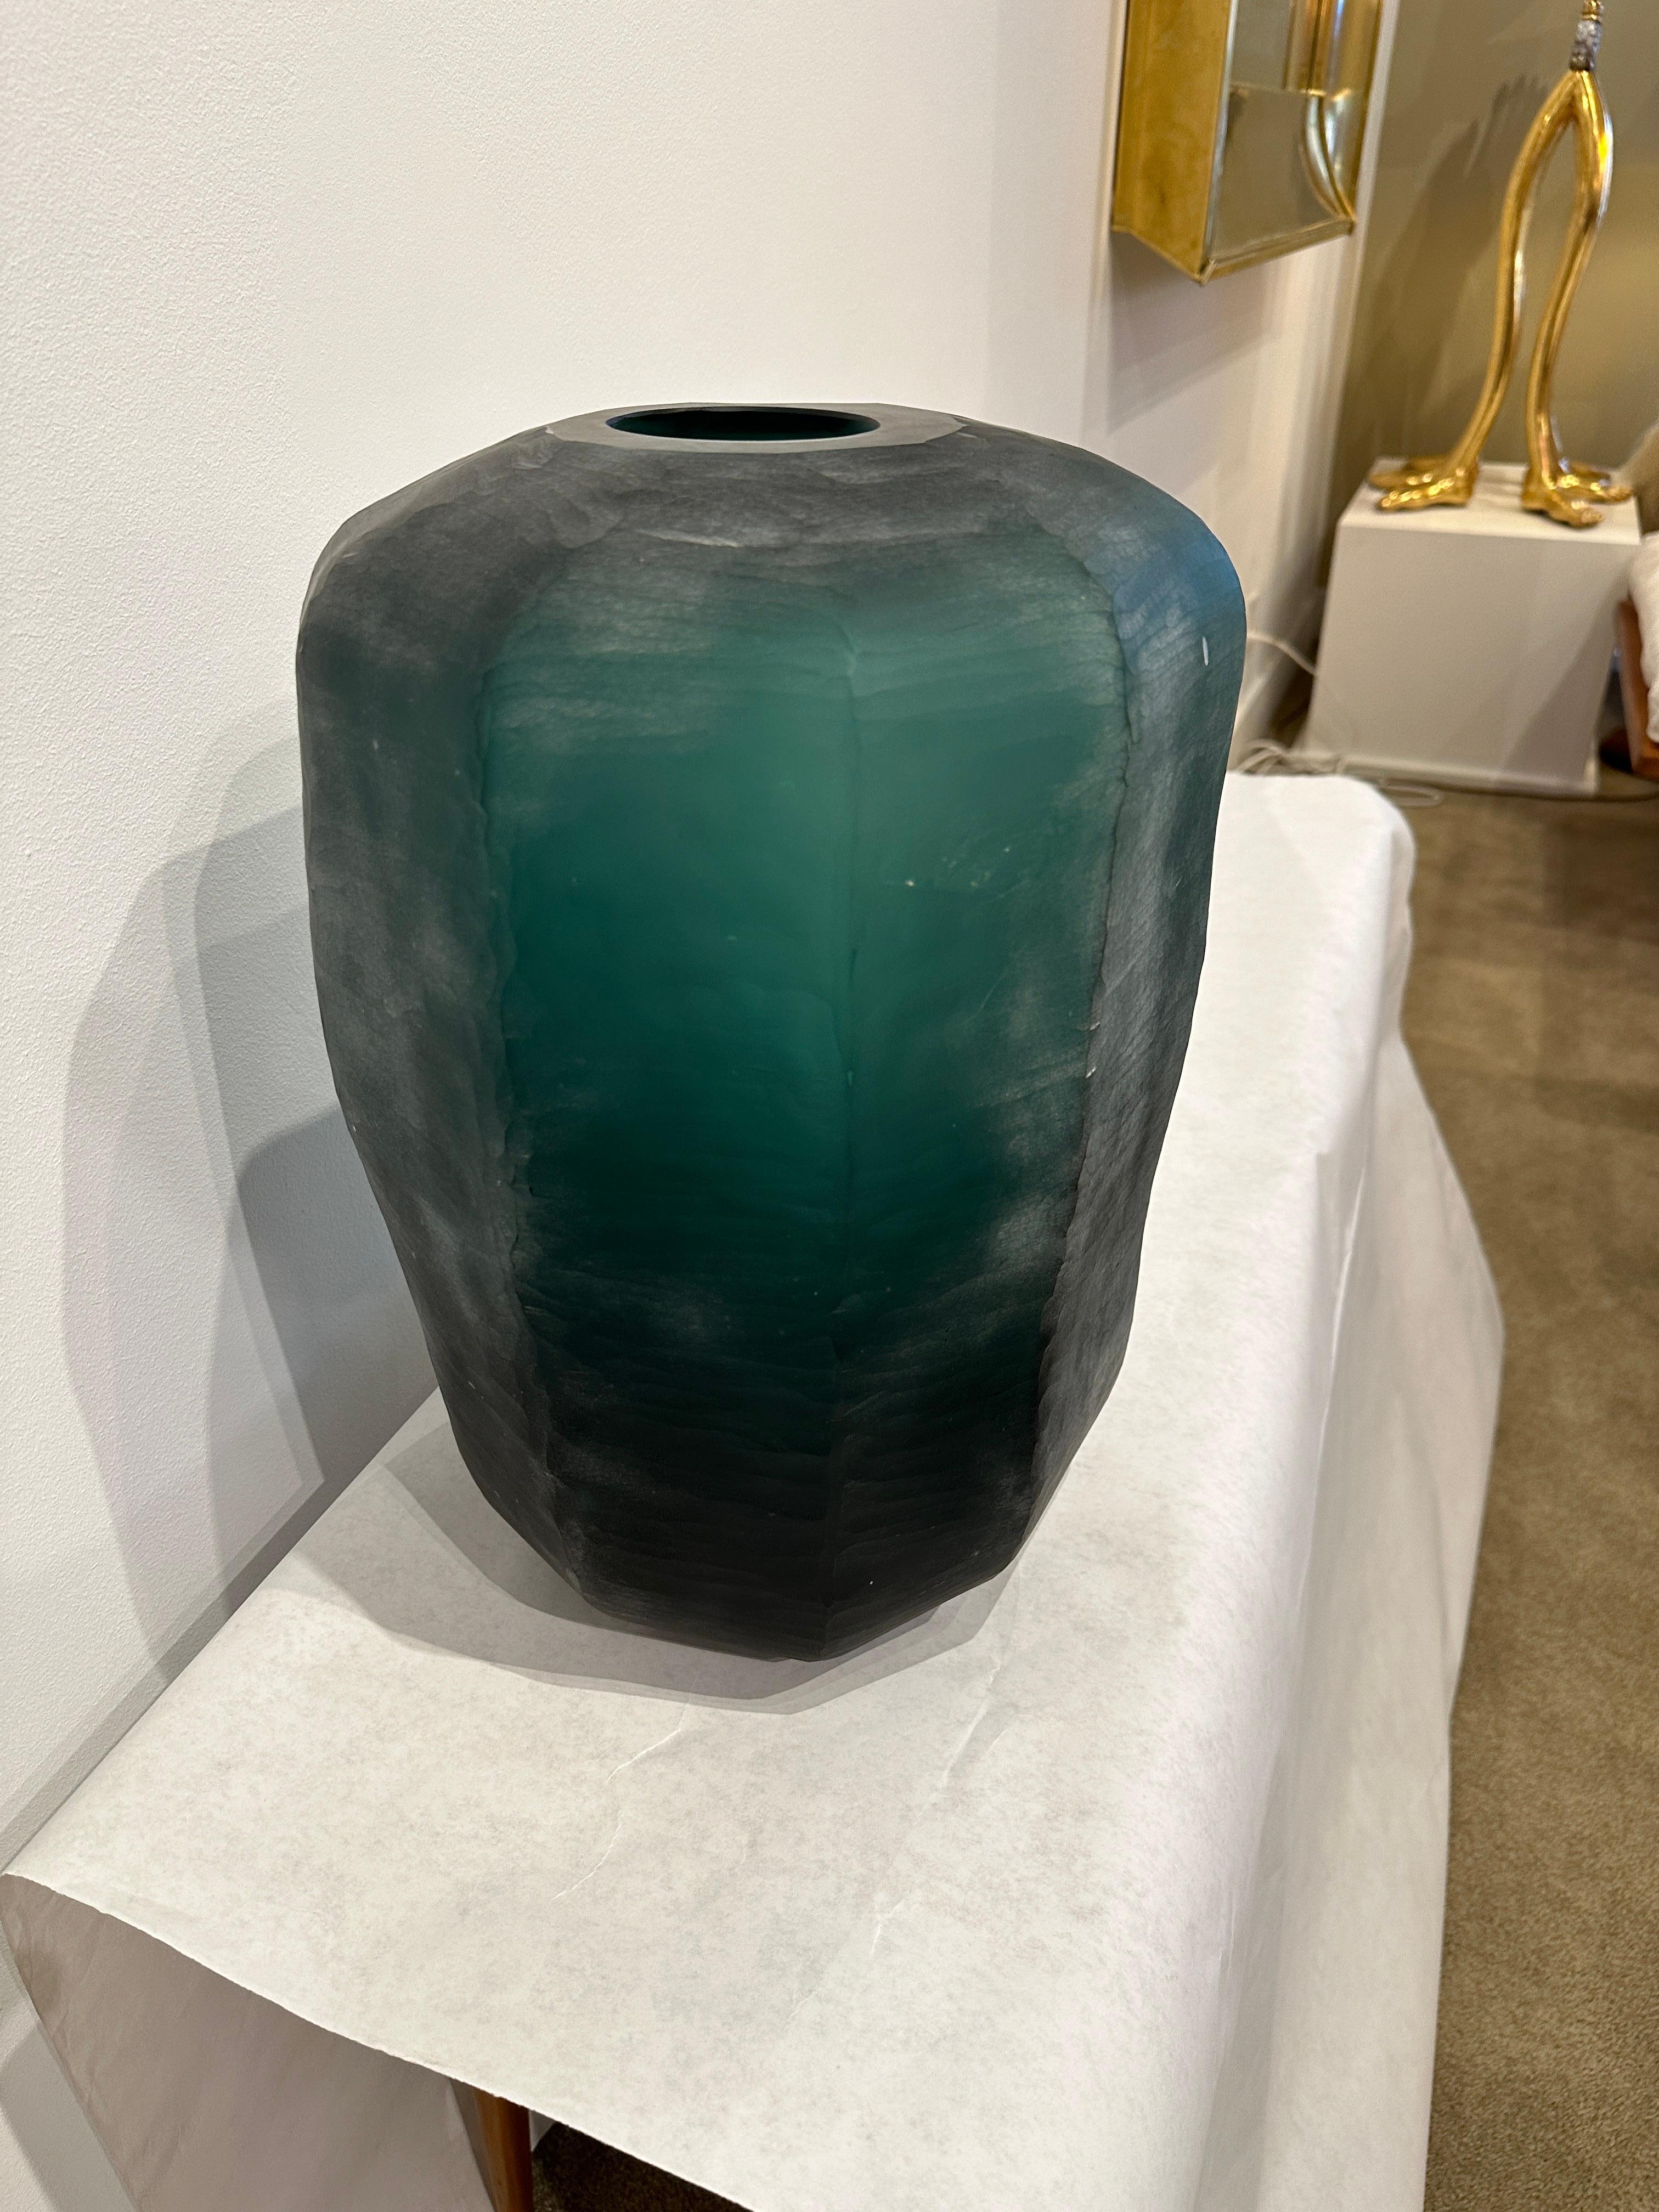 Voici un vase surdimensionné en verre de Murano à facettes d'un vert profond, superbement décoré. La finition intentionnellement brute de l'extérieur ajoute beaucoup de profondeur et de beauté à cette pièce rare.  CET ARTICLE EST SITUÉ ET SERA